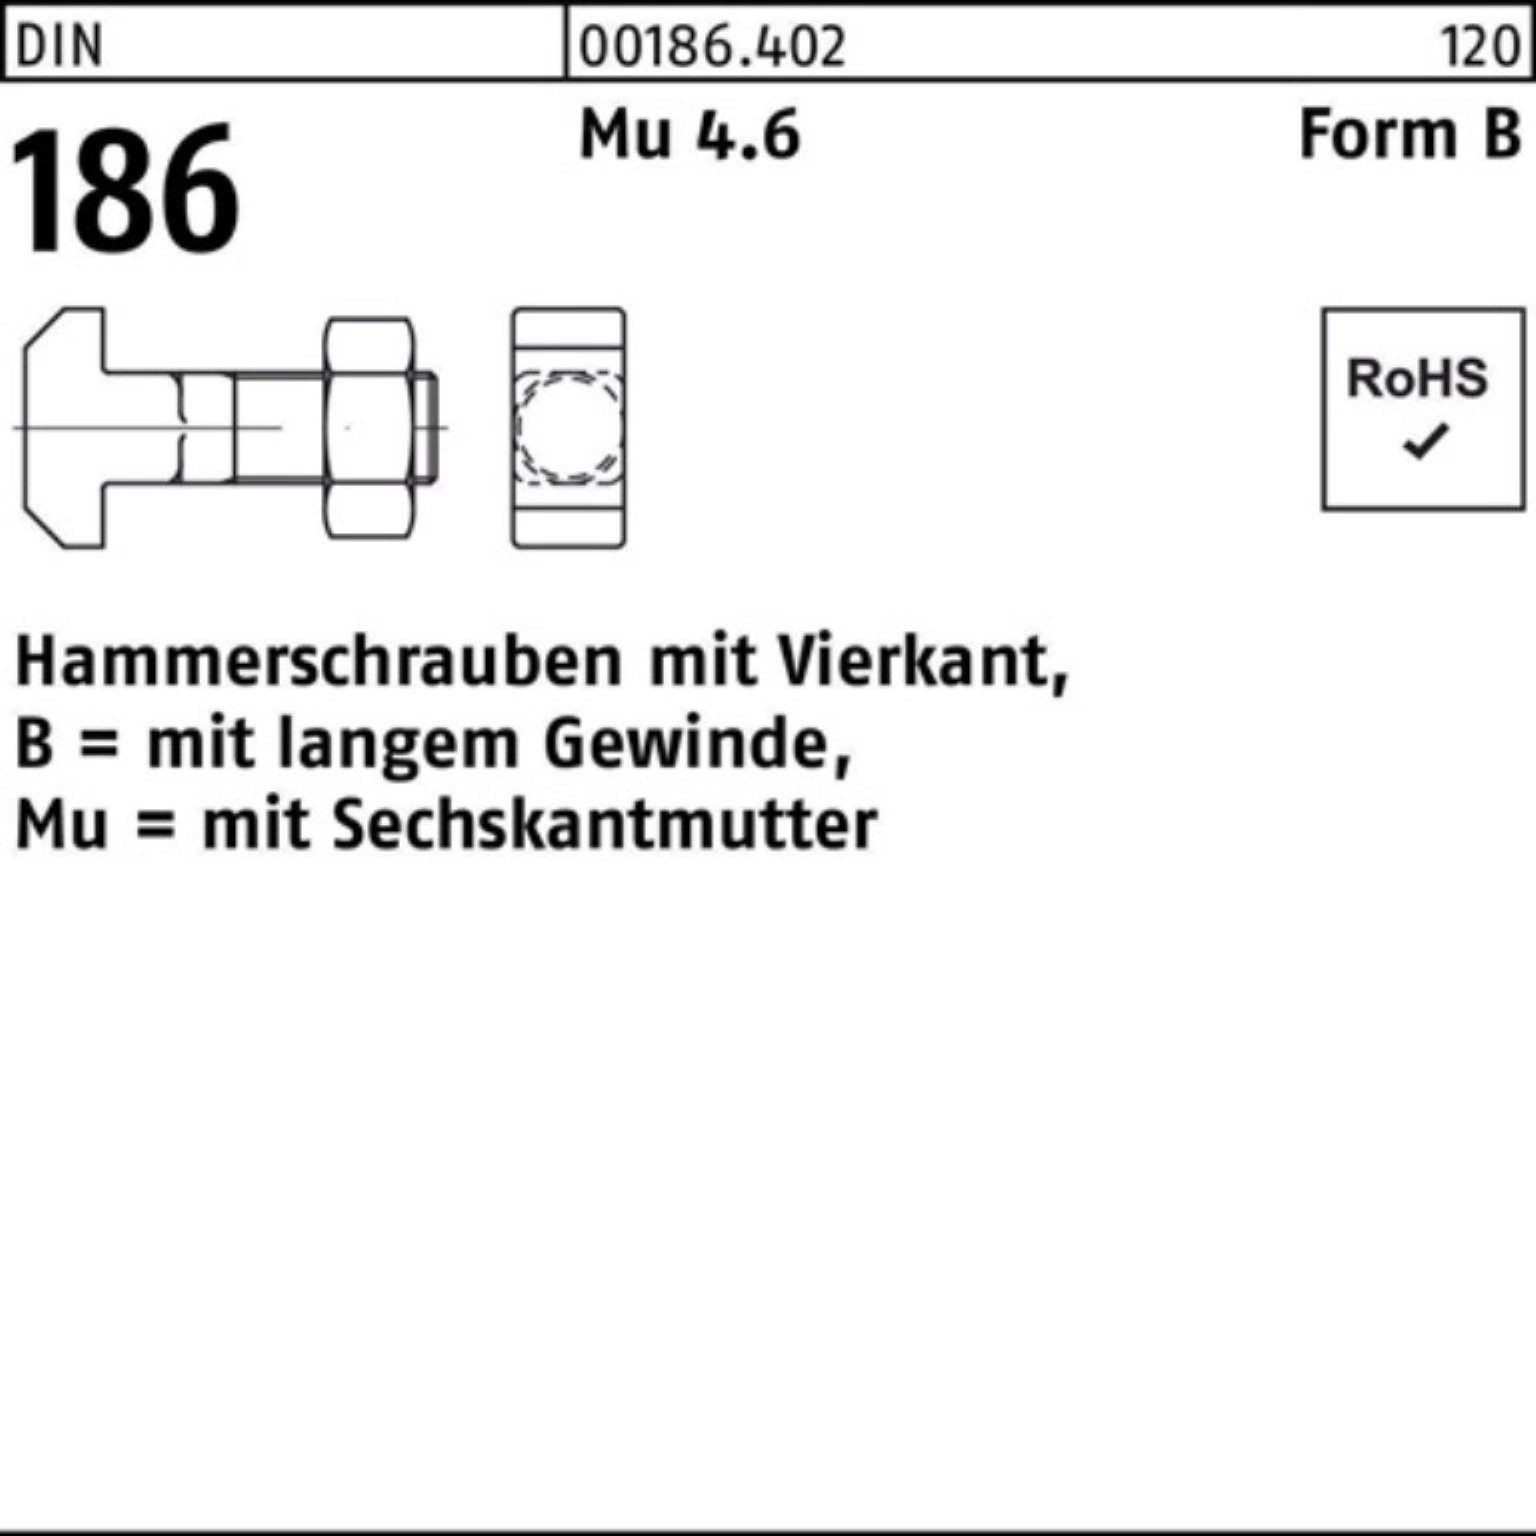 Reyher Schraube 100er 186 6-ktmutter Hammerschraube 100 FormB Vierkant DIN Pack 24x BM